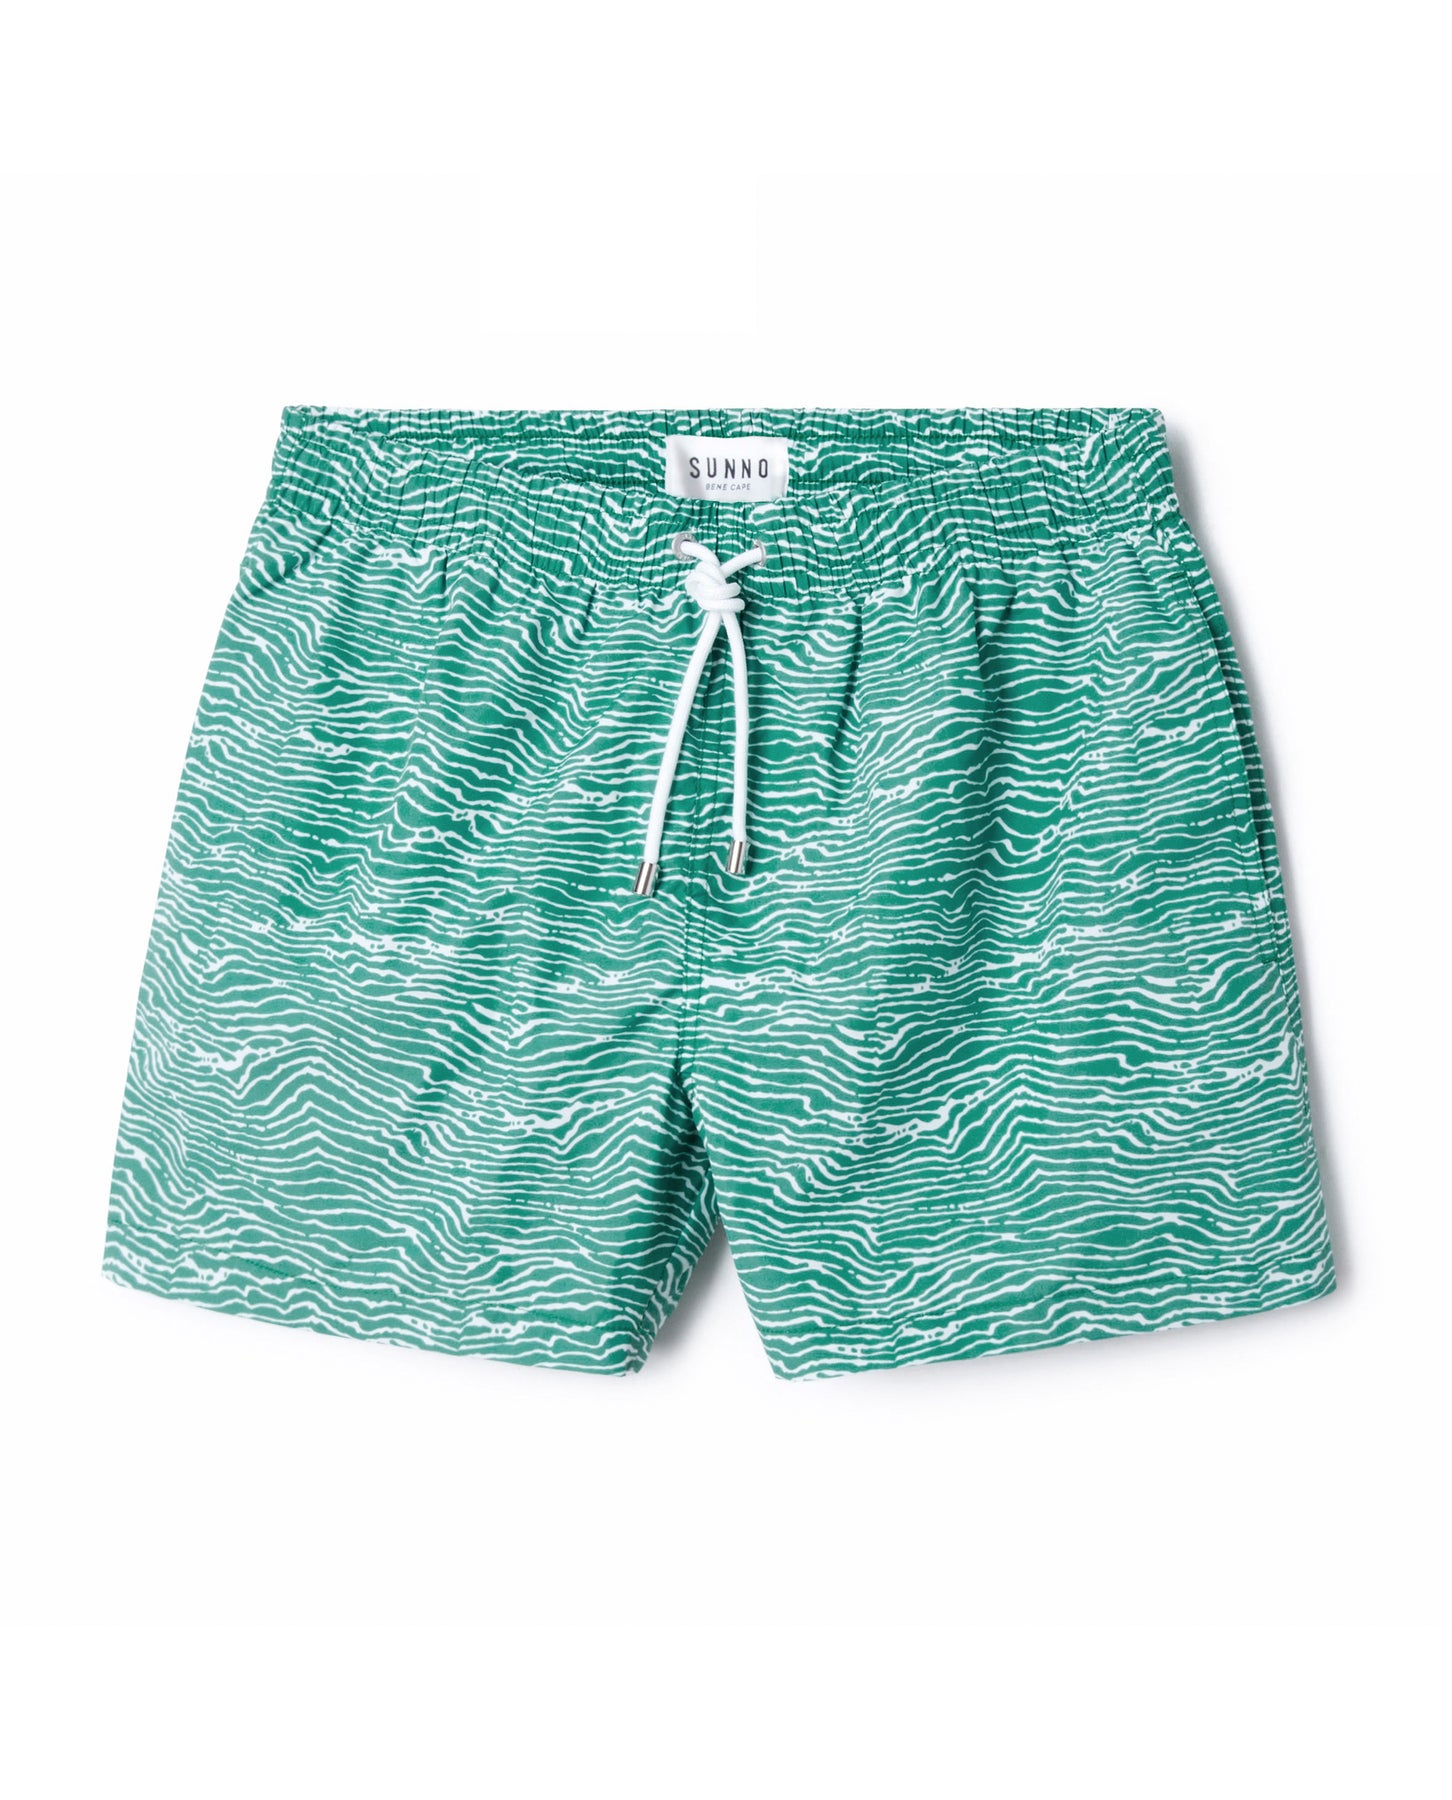 Layer printed Sea Green & White Swim Short | Sunno by Bene Cape – SUNNO ...